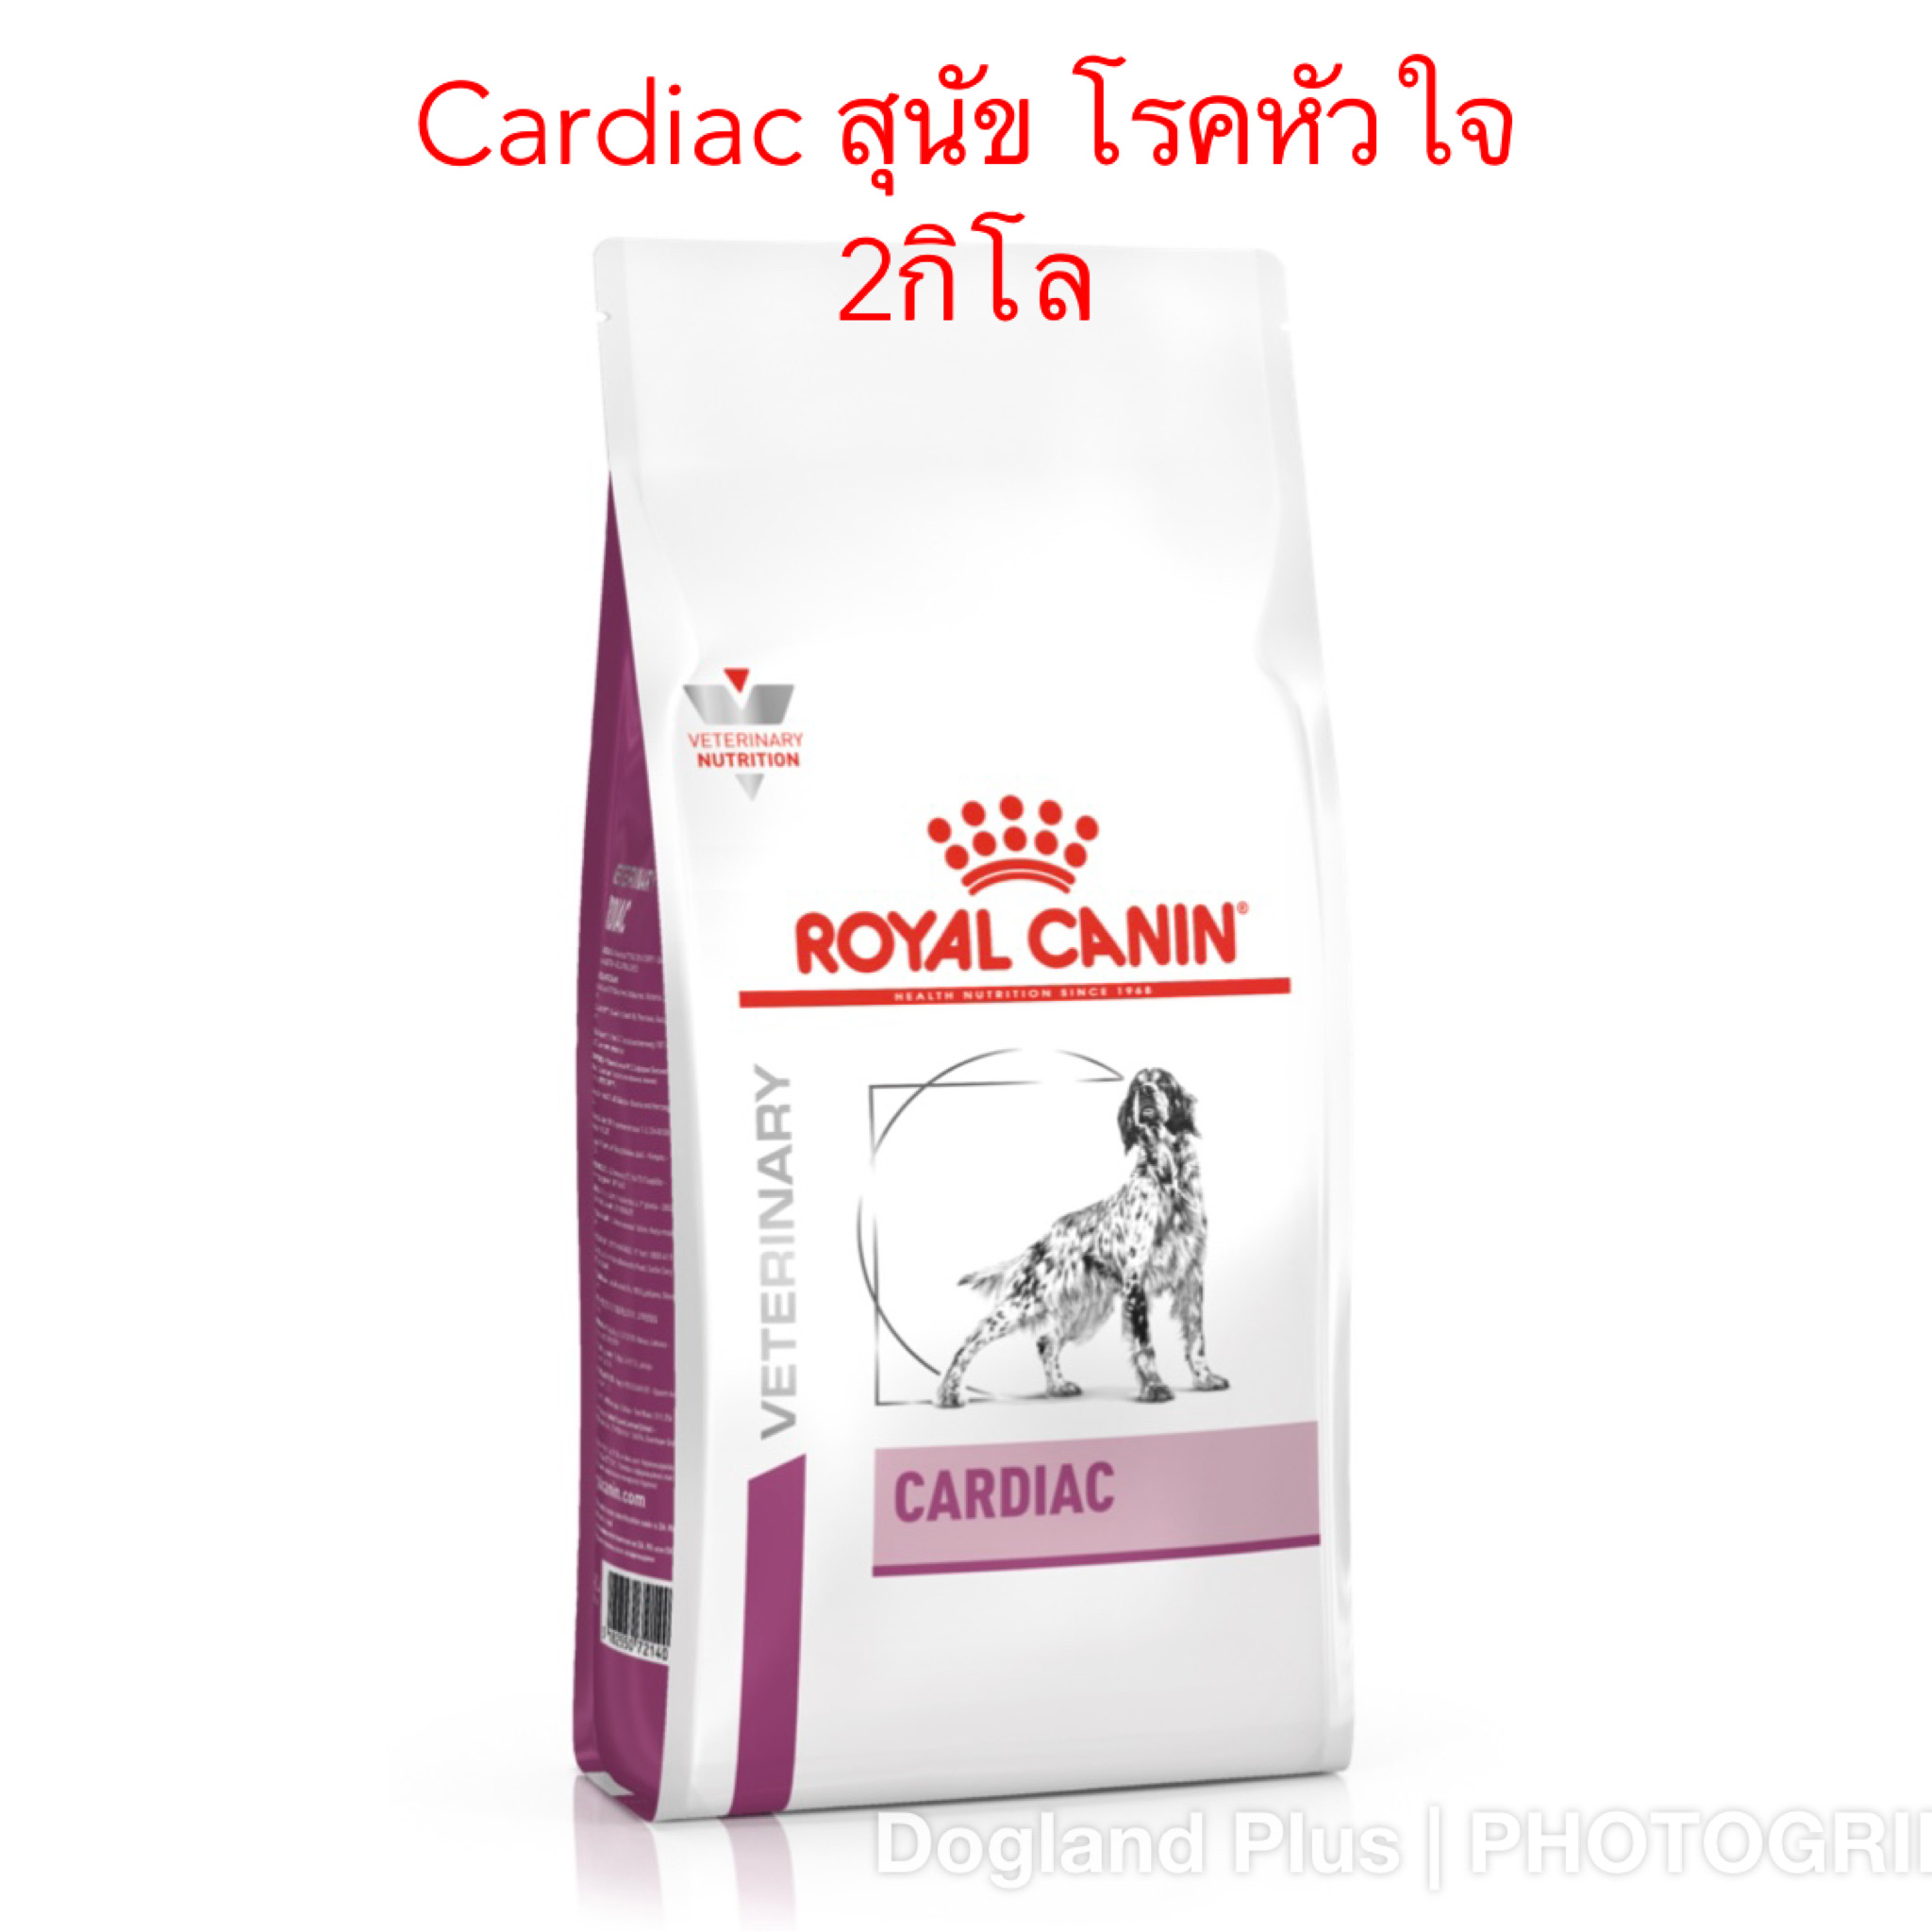 Royal Canin Cardiac สุนัข โรคหัวใจ 2 กิโล